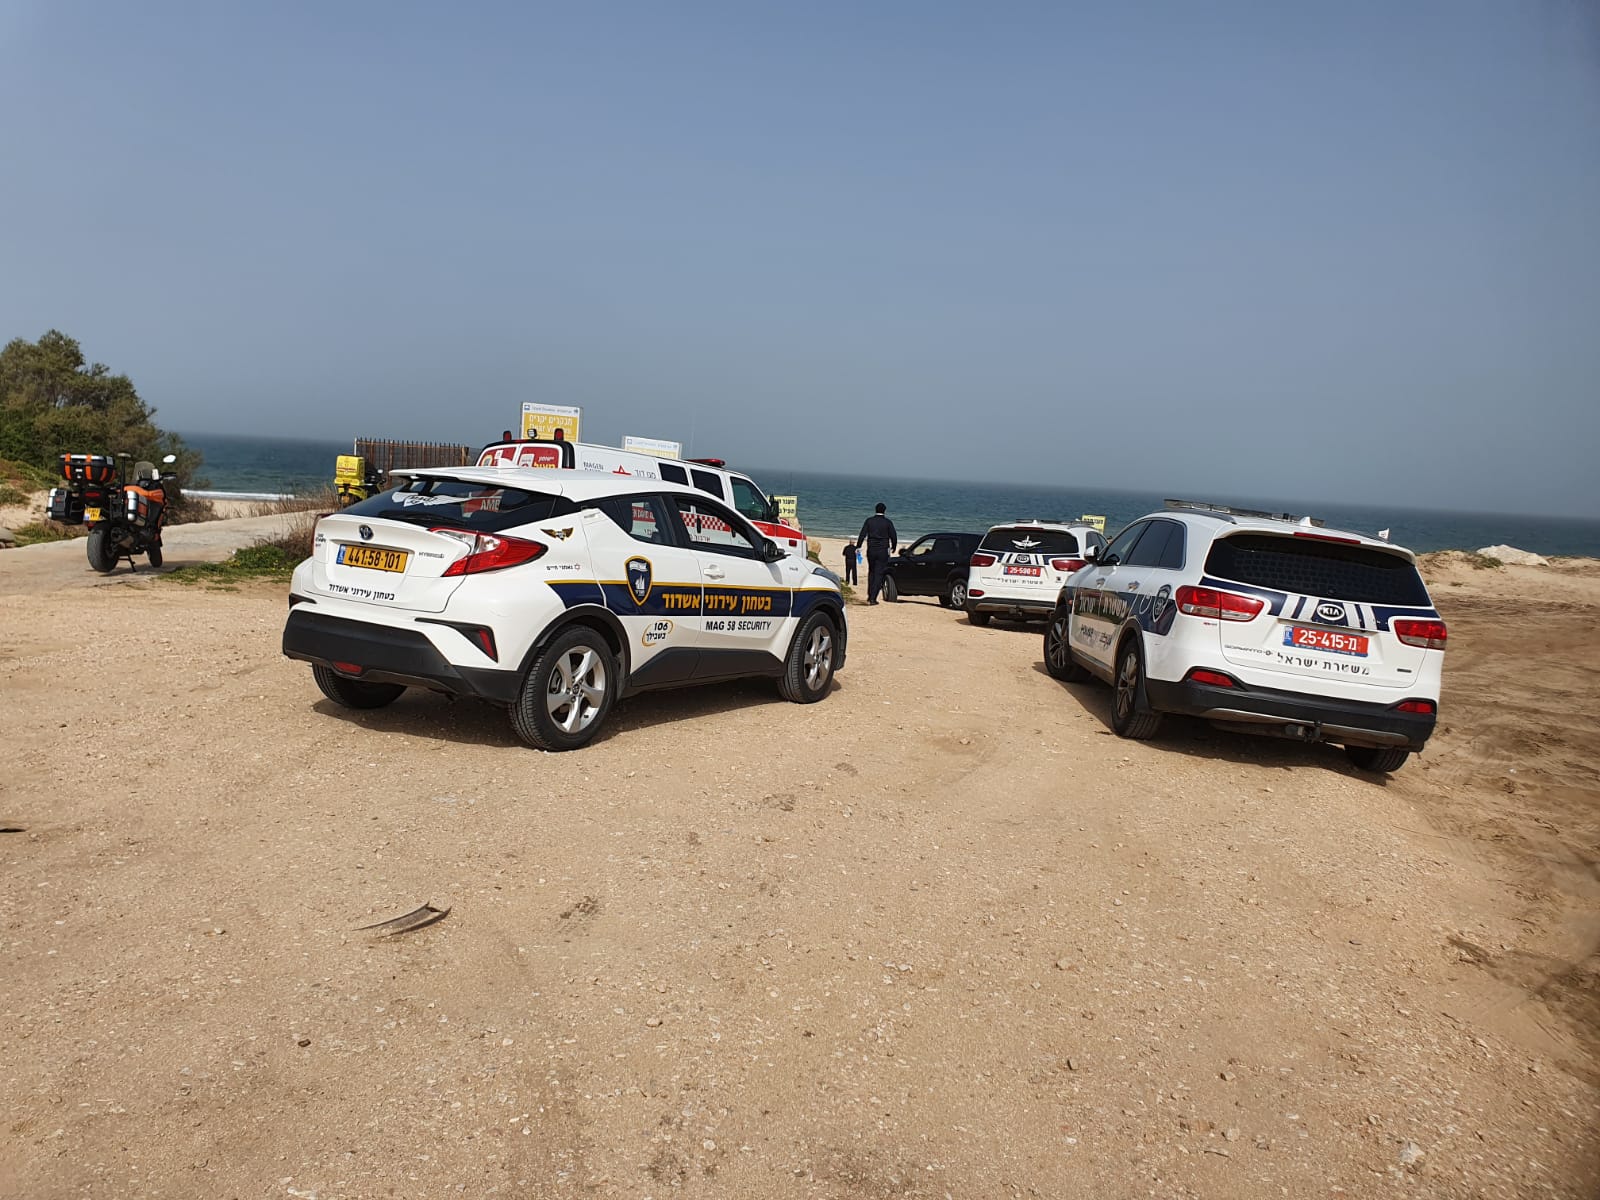 אירוע טביעה בחוף אשדוד. צילום: איחוד הצלה